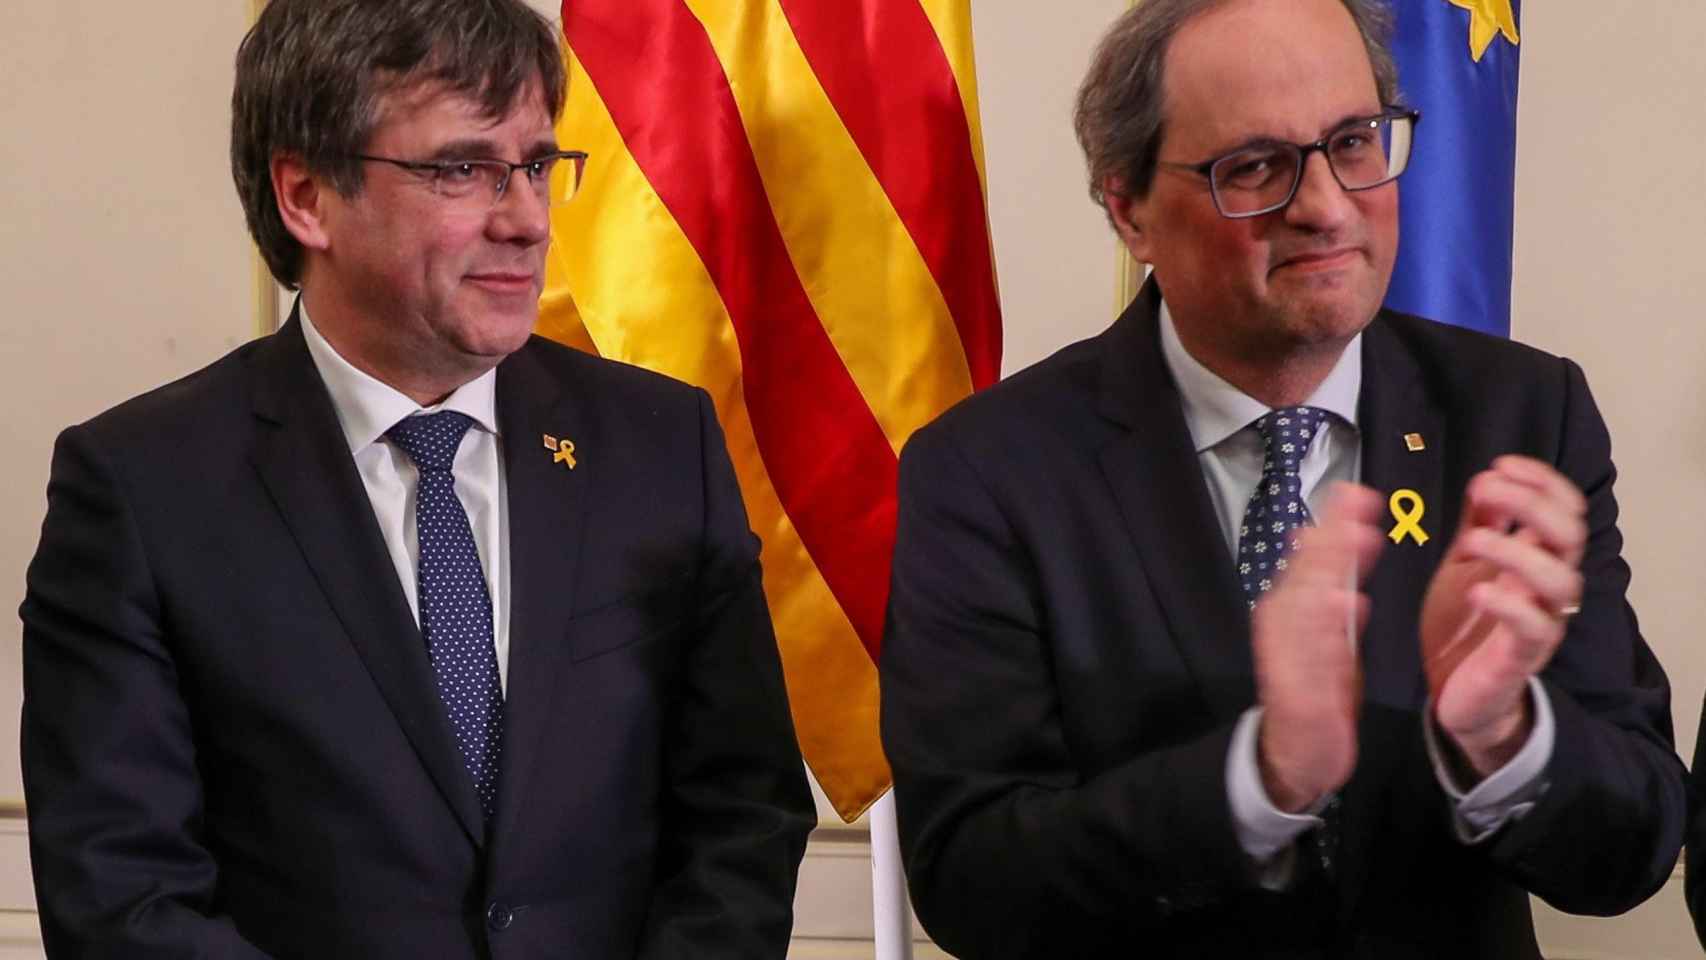 Puigdemont y Torra, dos de los dirigentes del independentismo, durante su charla sobre lo que llaman república en un hotel belga. Imagen del artículo 'por el bien de los indepes' y 'Vais muy sobrados, merluzos'. Imagen del artículo 'Sin temor, sin traicio